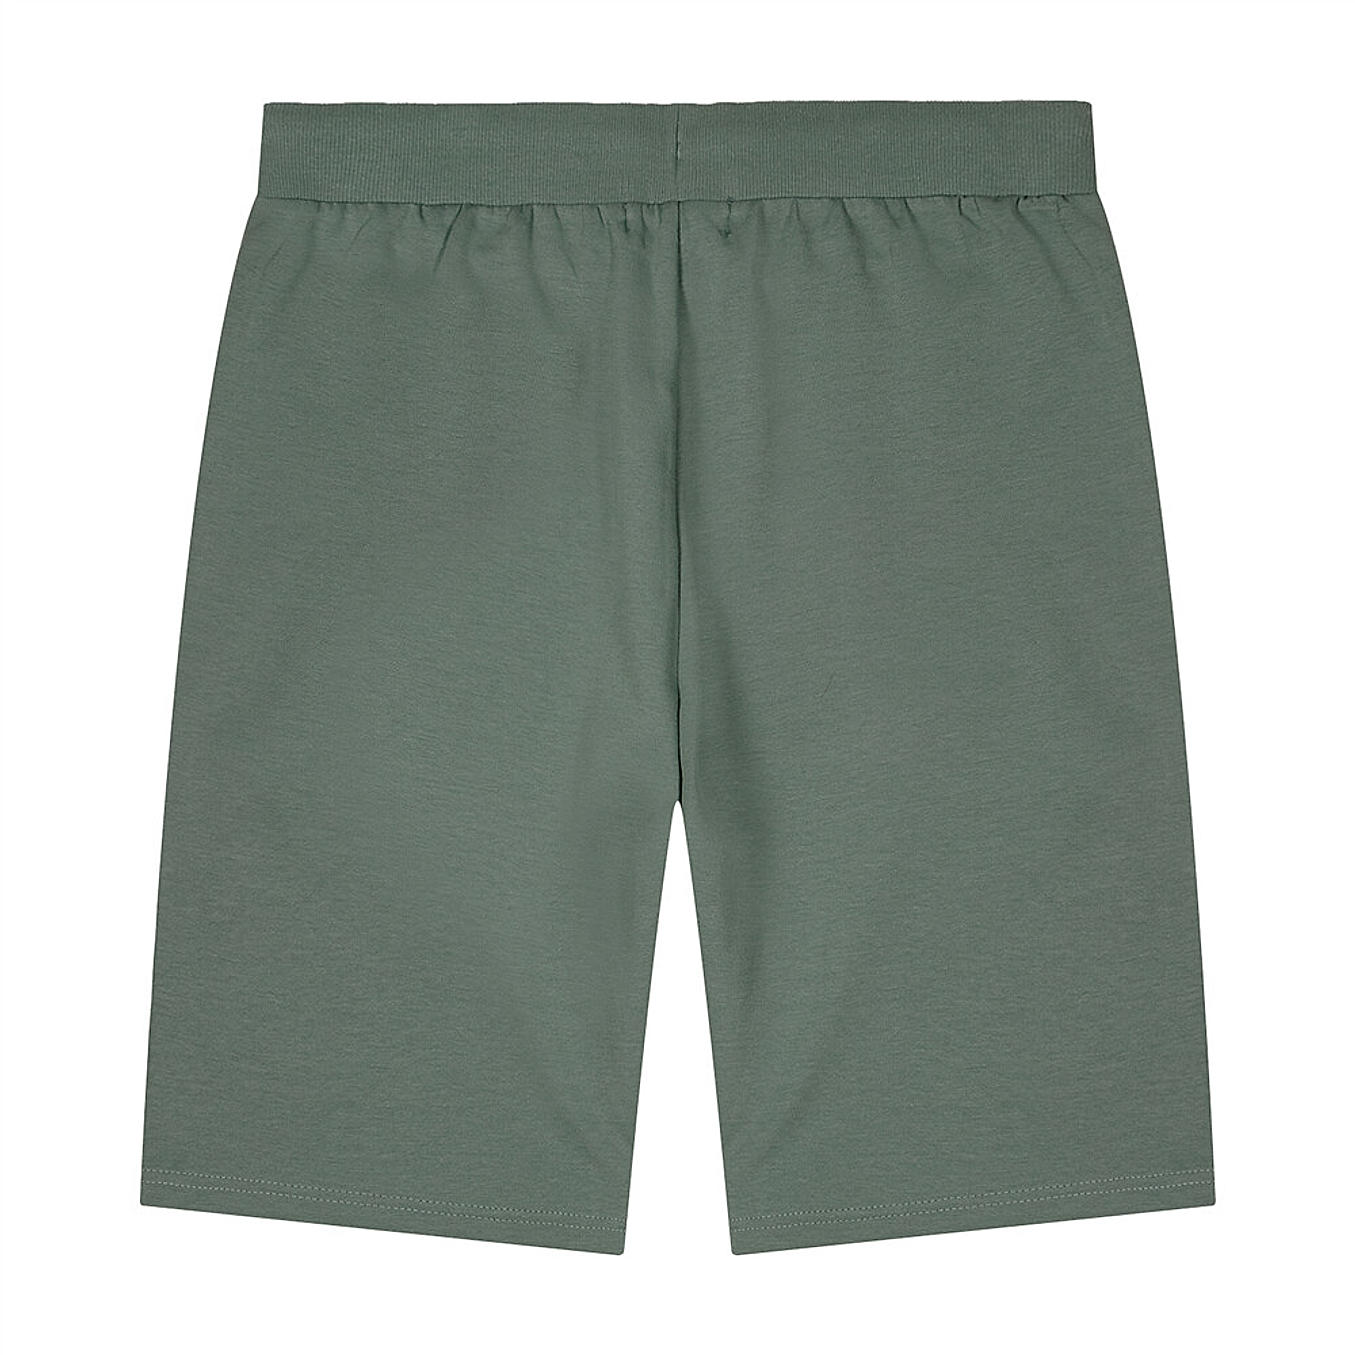 Giordano Men's Double Knit Shorts